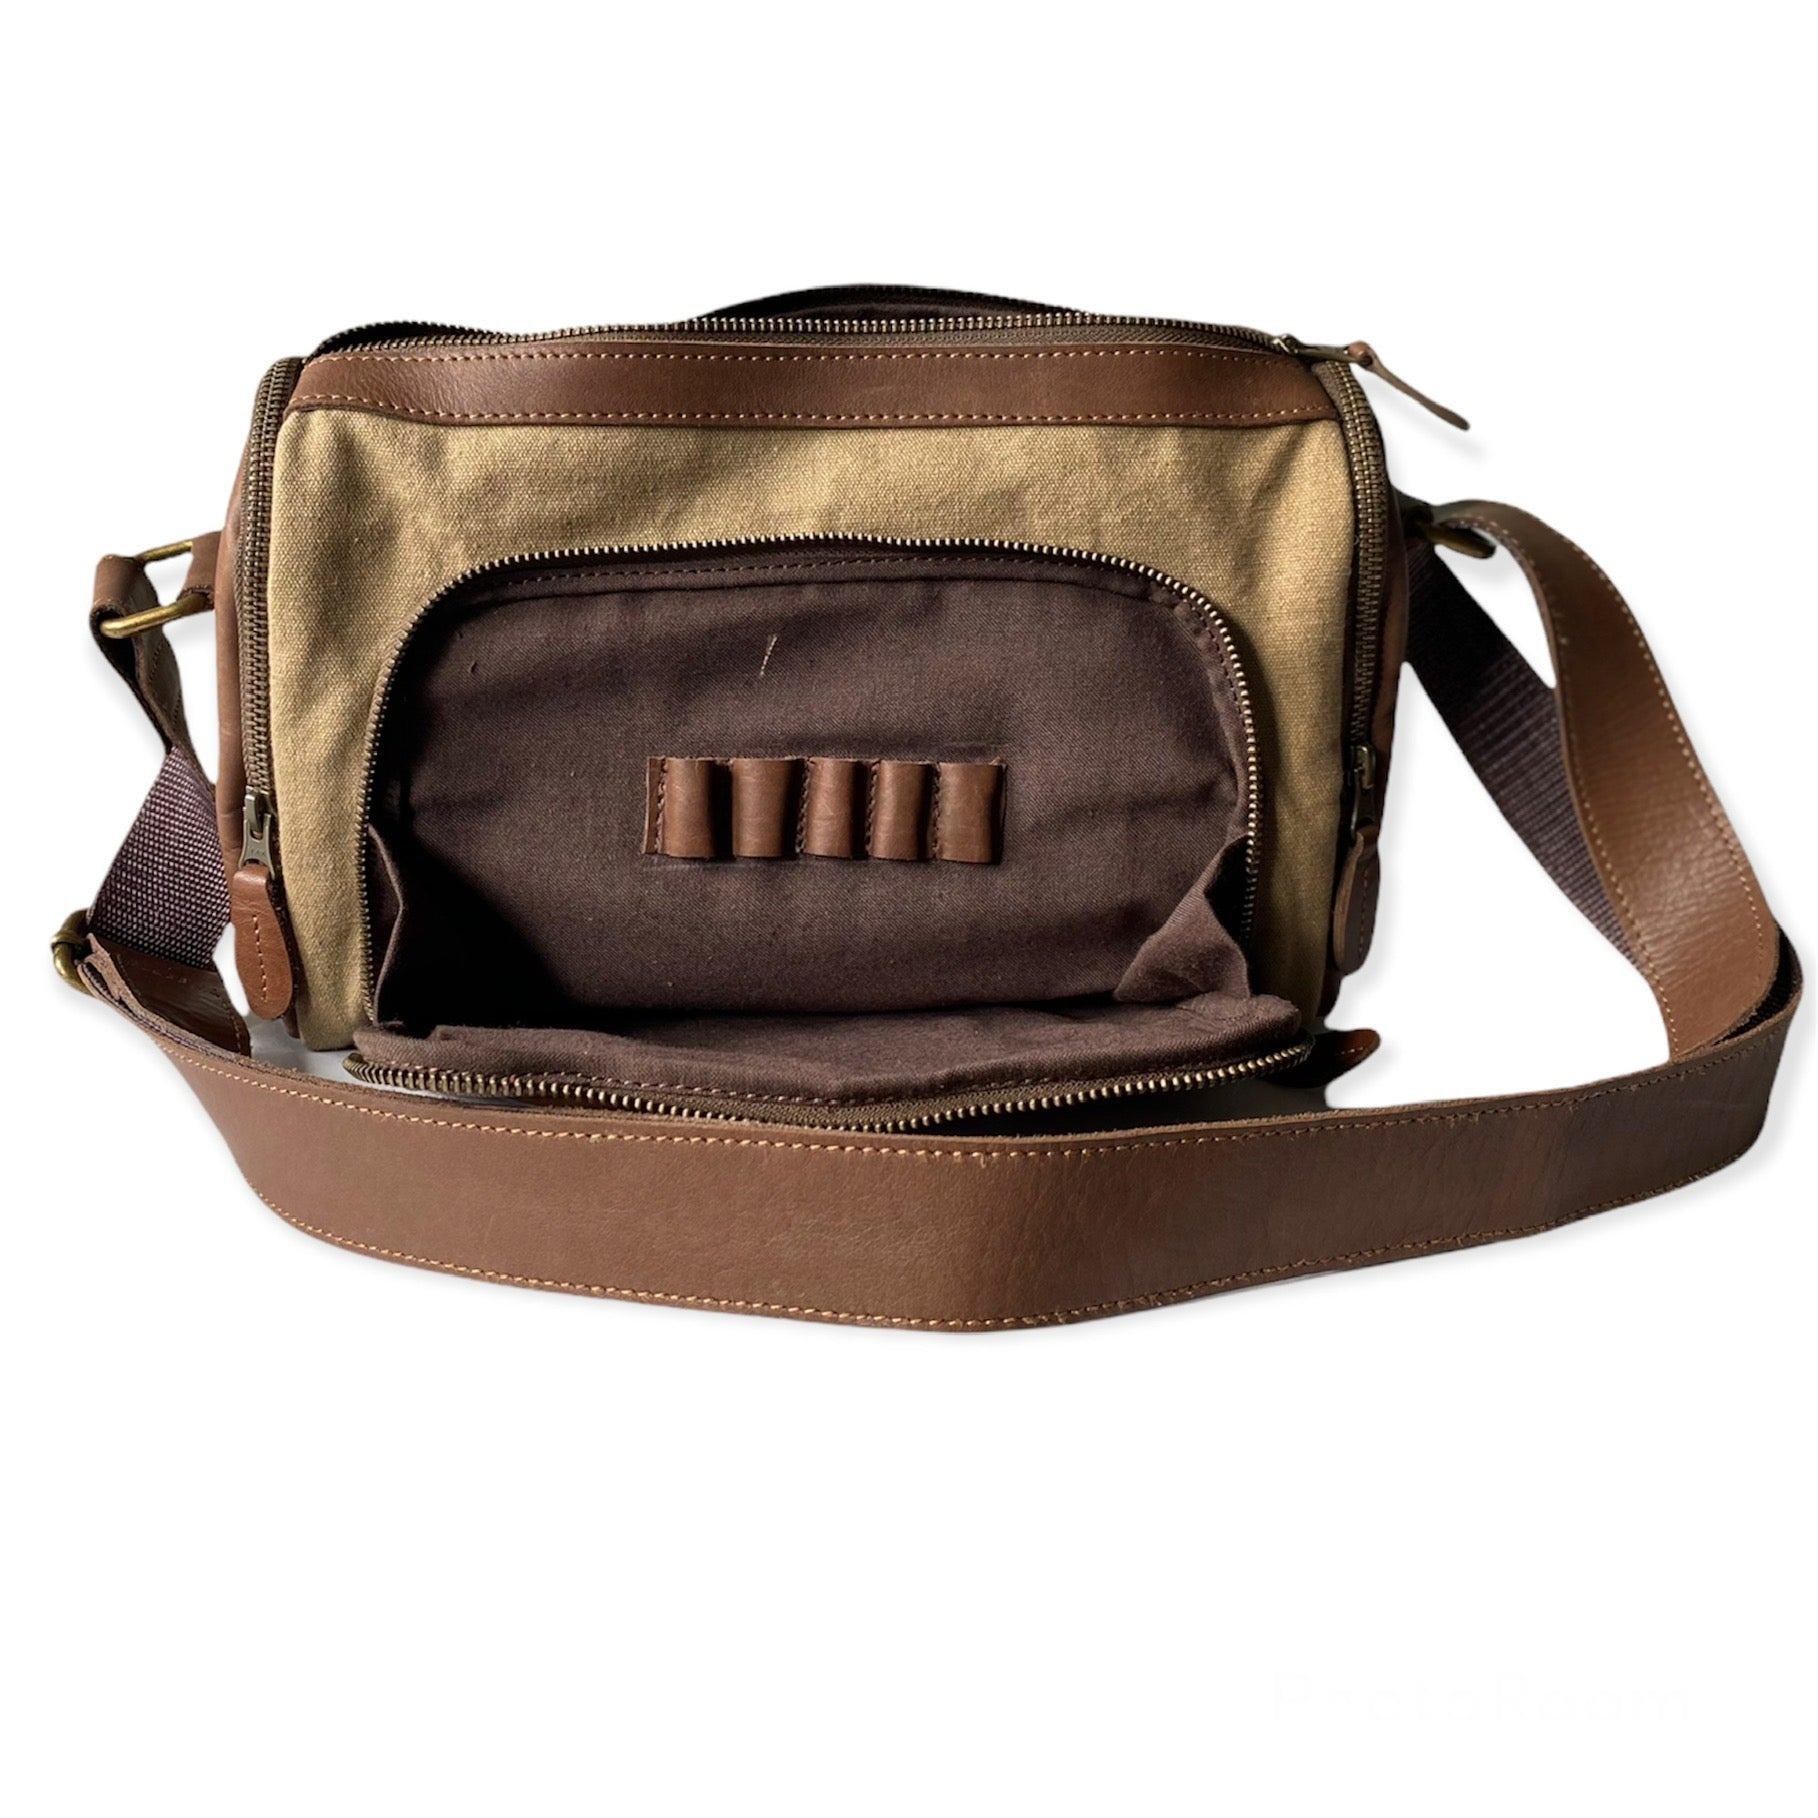 Leather Crossbody Bags for Women Handbags Women's Shoulder Bag Adjustable Shoulder Strap